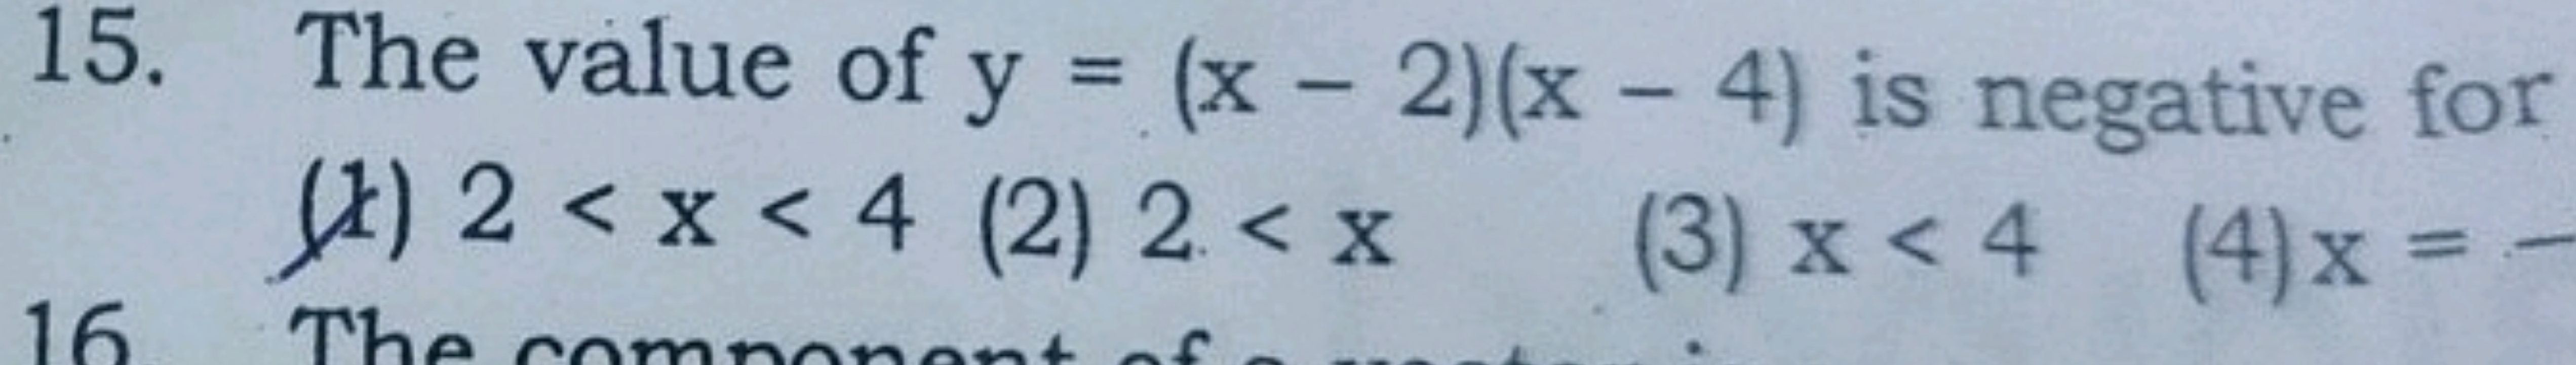 15. The value of y=(x−2)(x−4) is negative for (x) 2<x<4
(2) 2<x
(3) x<